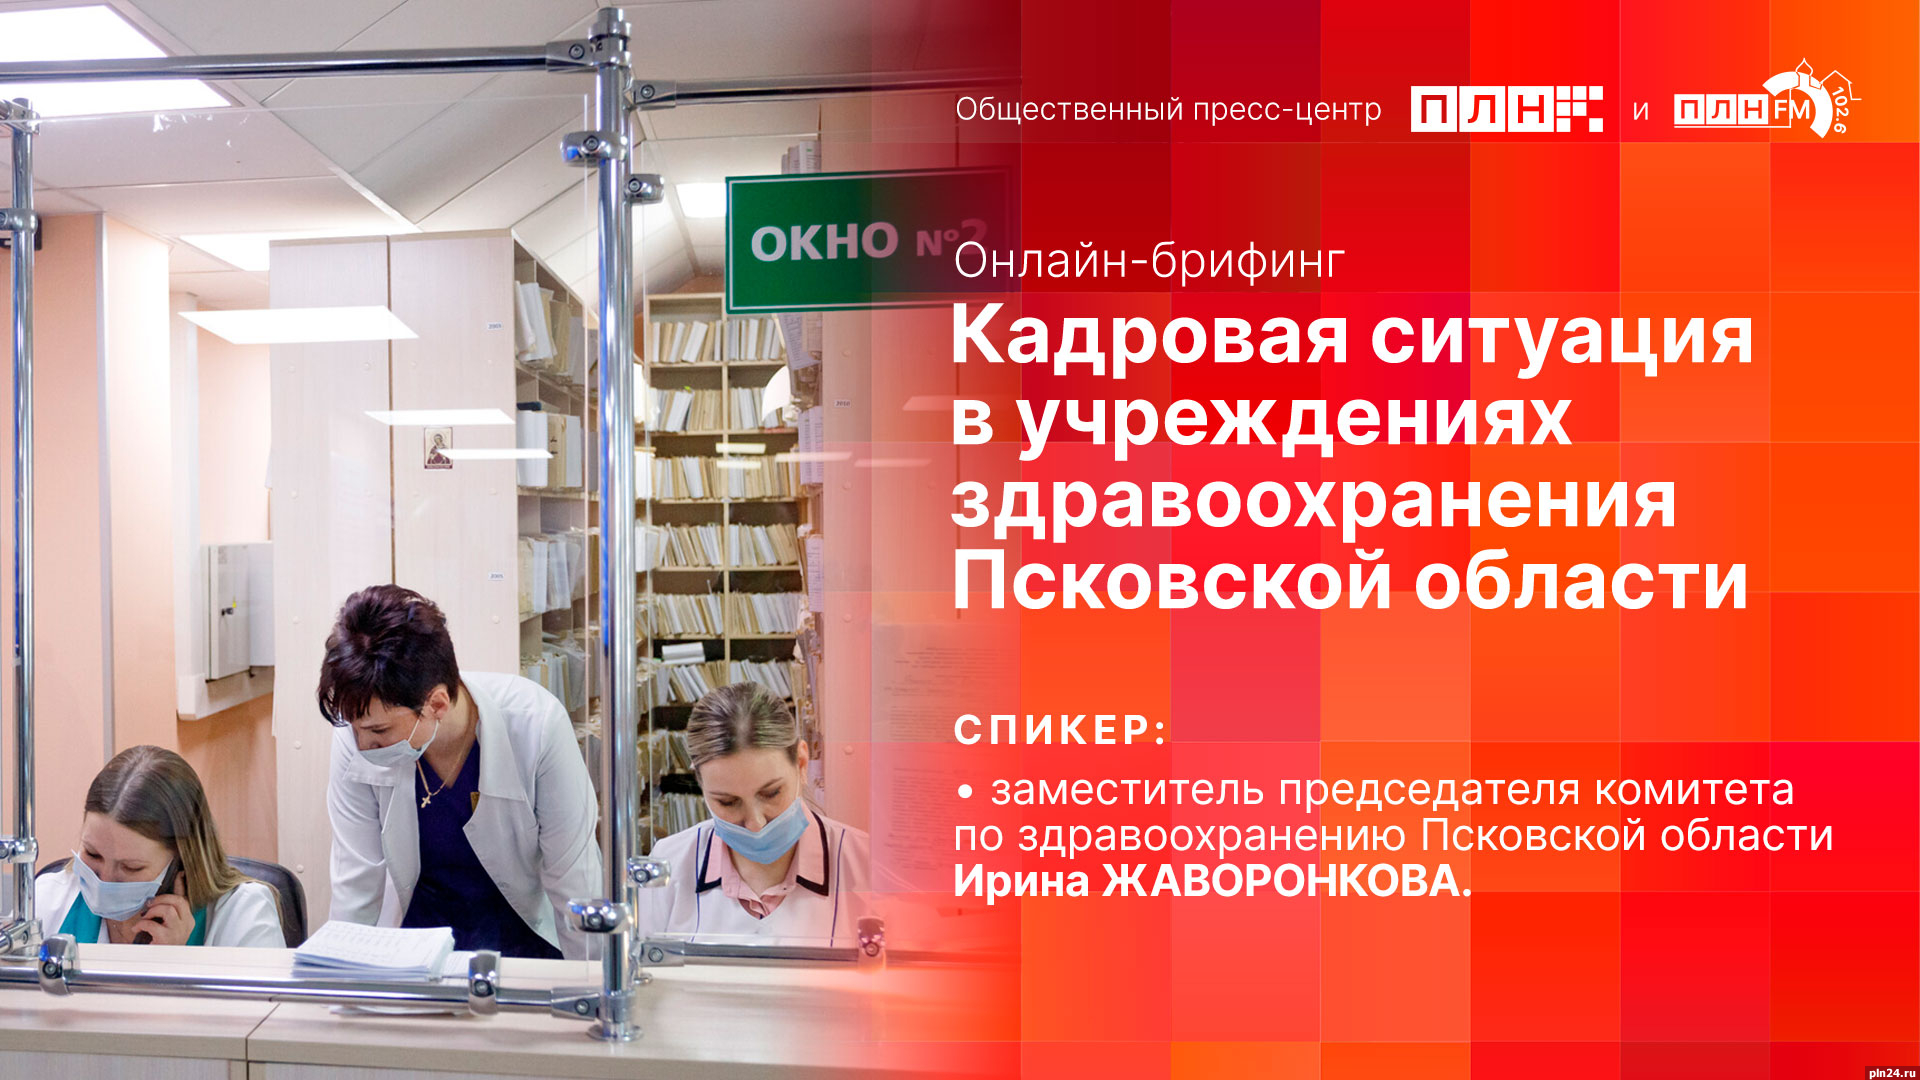 Начинается видеотрансляция онлайн-брифинга о кадровой ситуации в учреждениях здравоохранения Псковской области